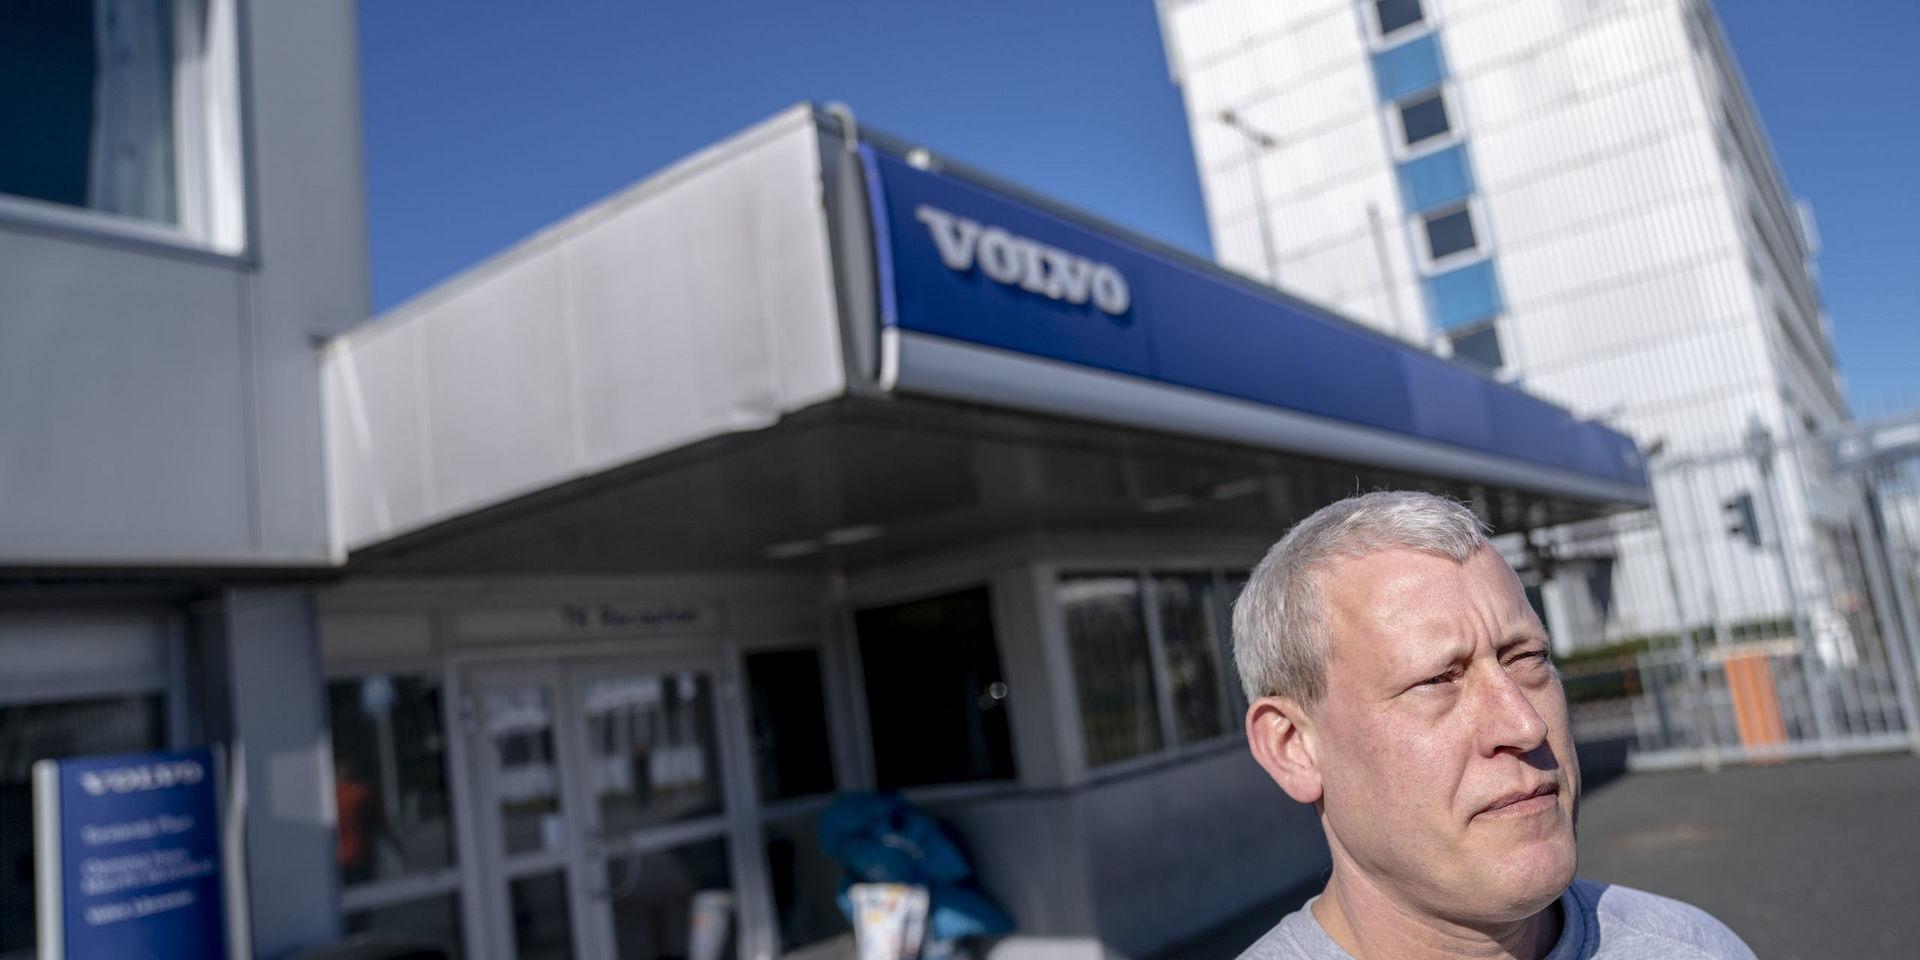 Per Svanberg, tjänsteman på Volvo Cars i Torslanda, är orolig för hur coronakrisen påverkar samhällets ekonomi och jobben.